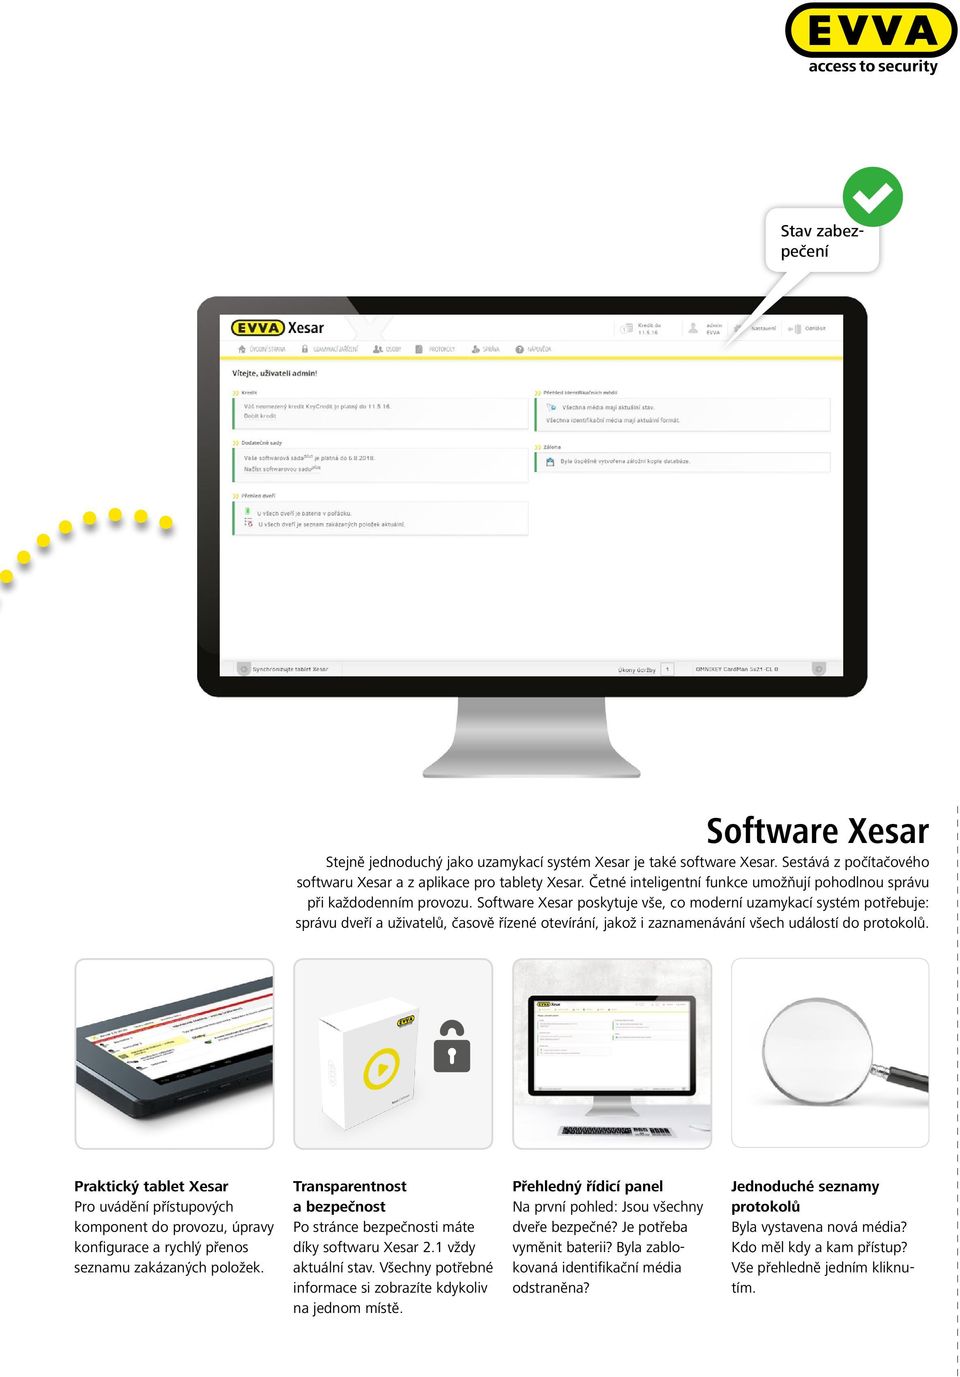 Software Xesar poskytuje vše, co moderní uzamykací systém potřebuje: správu dveří a uživatelů, časově řízené otevírání, jakož i zaznamenávání všech událostí do protokolů.